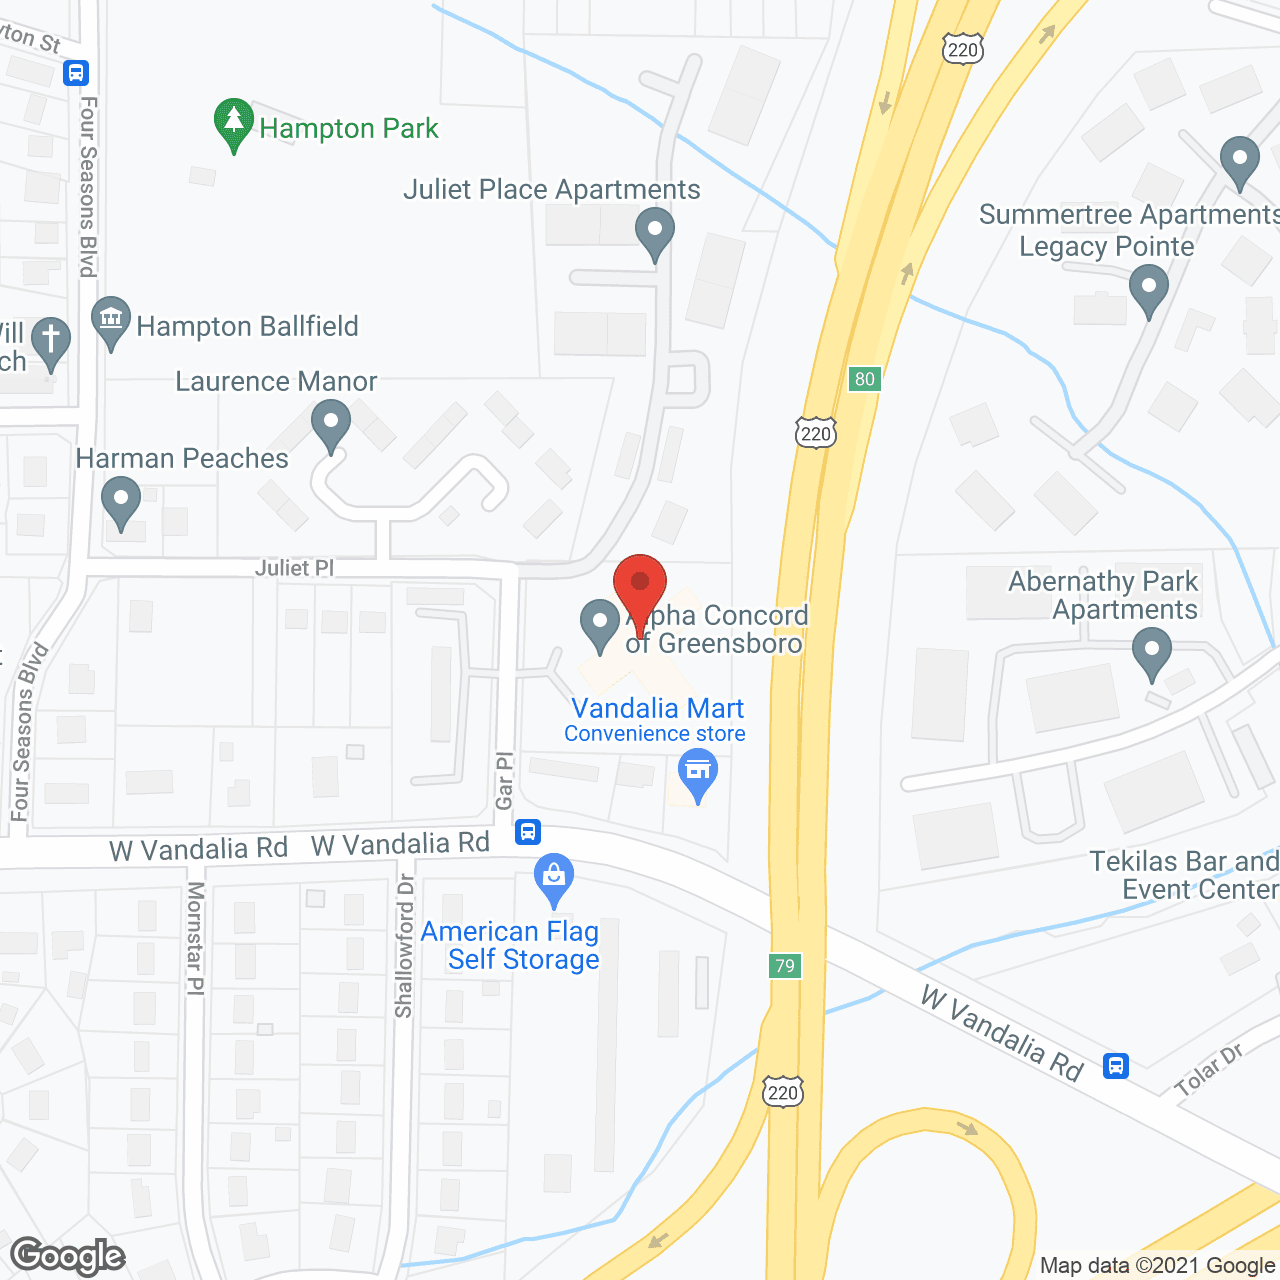 Alpha Concord of Greensboro in google map